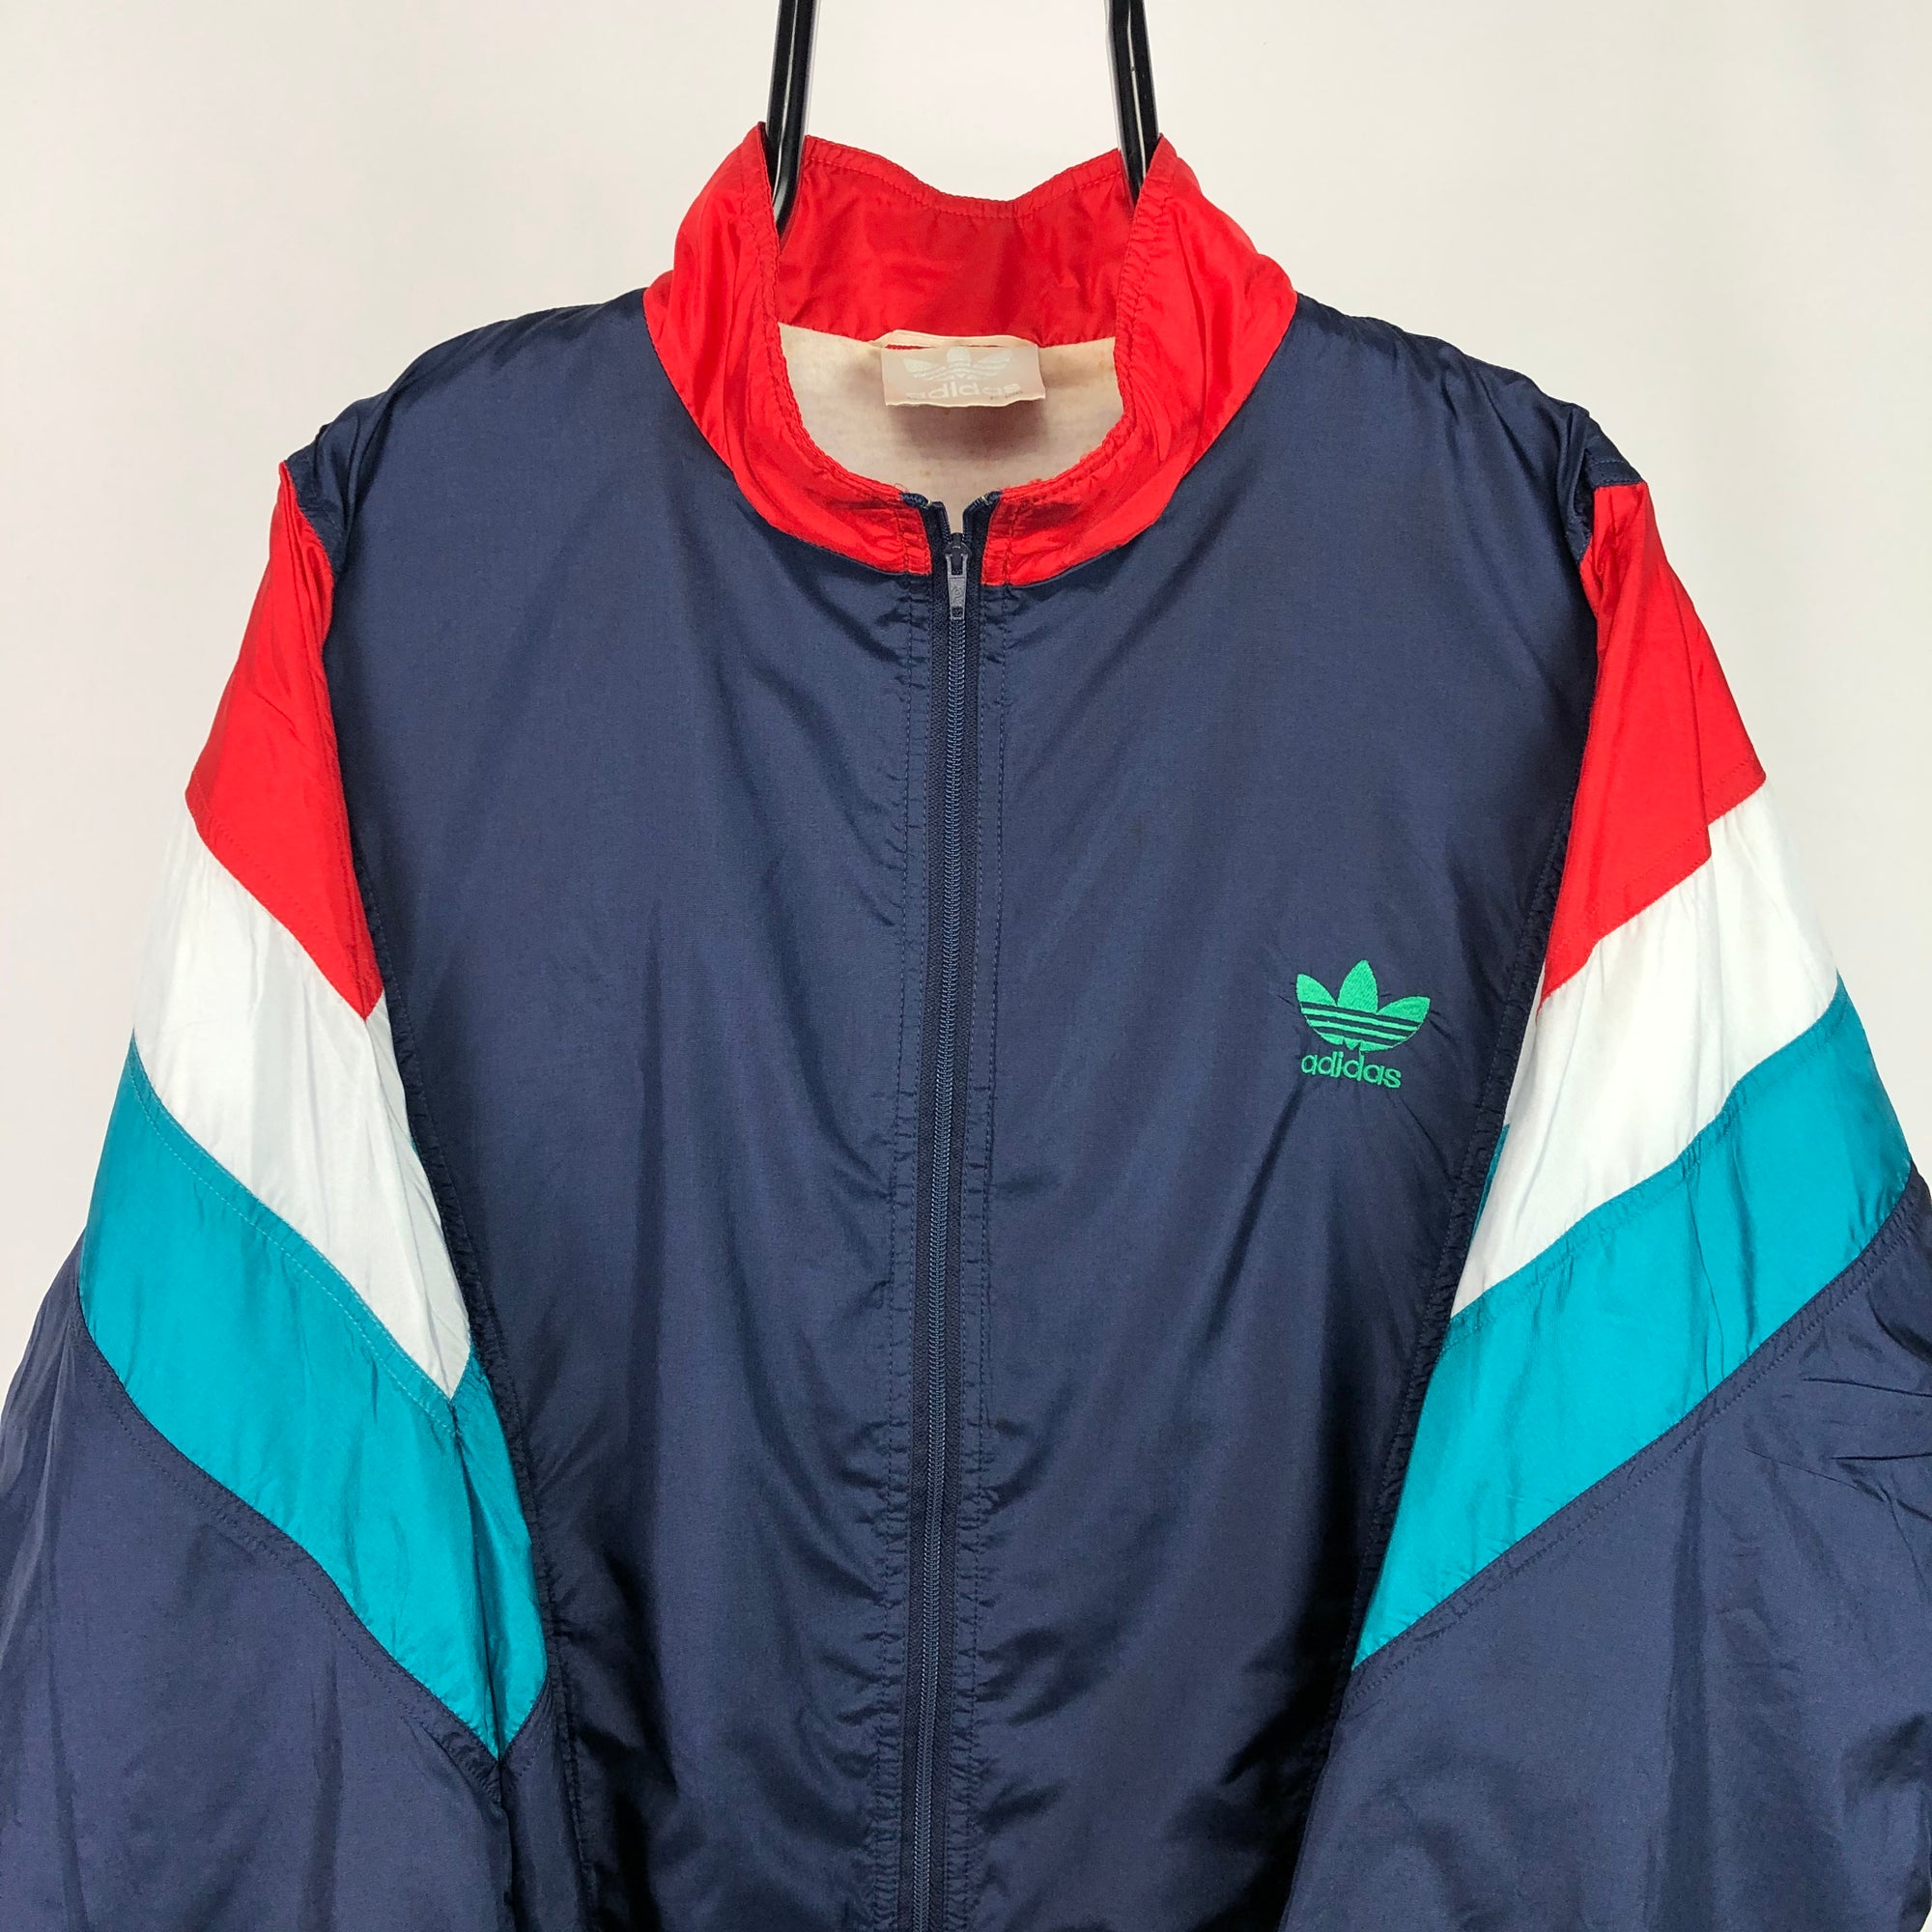 Vintage 80s Adidas Vertex Track Jacket - Men's XL/Women's XXL